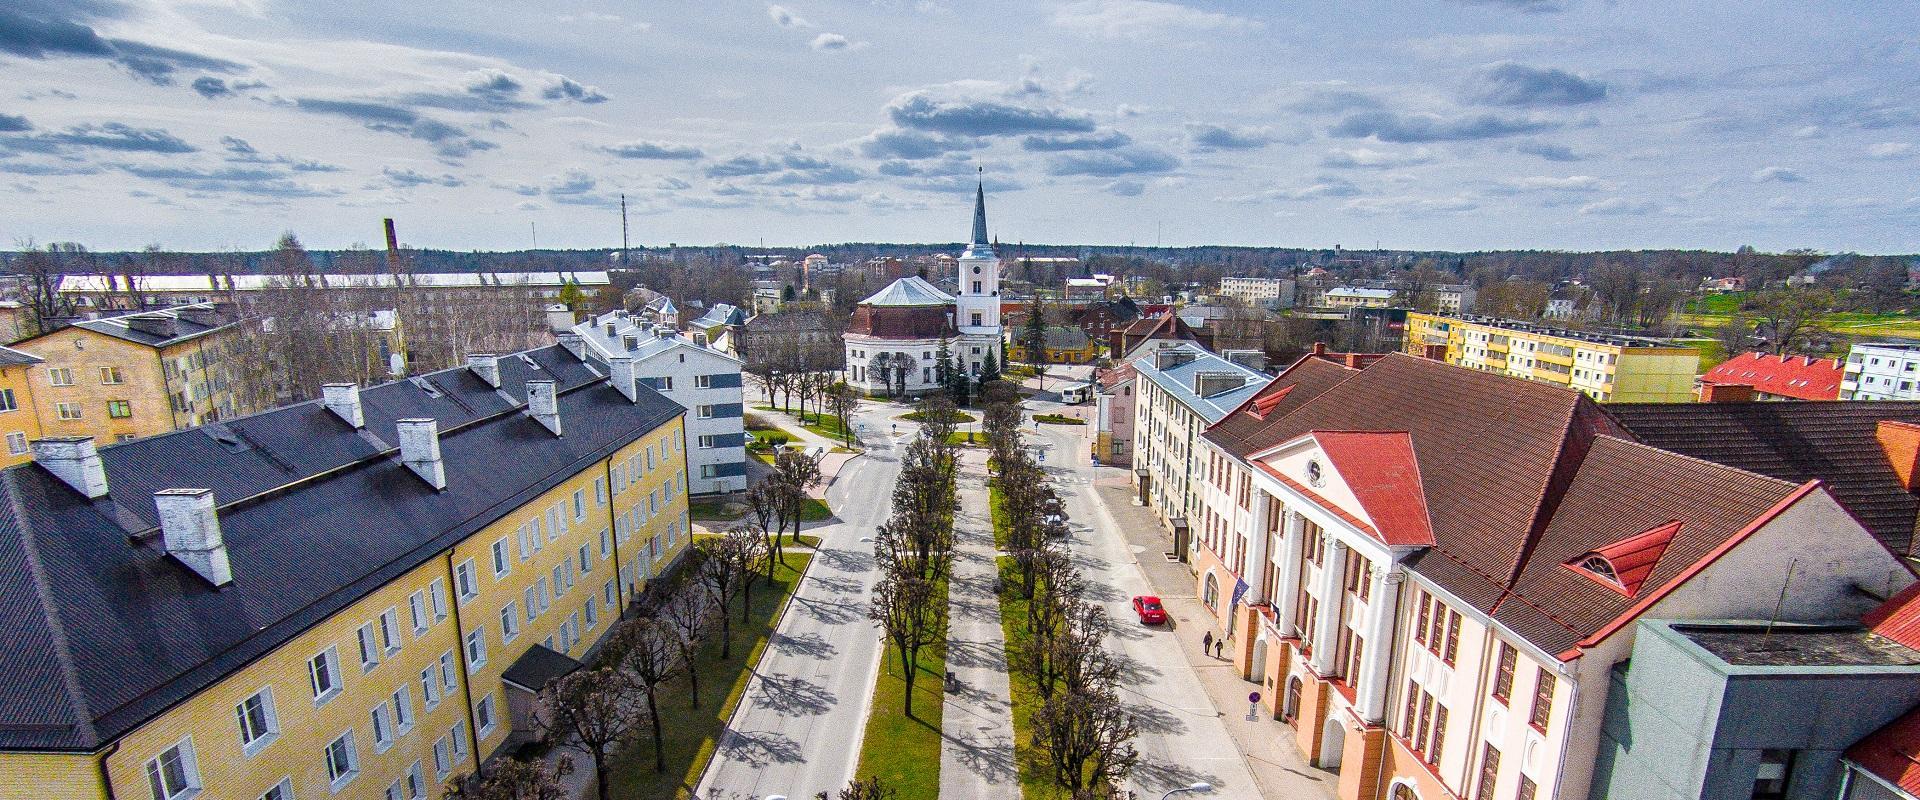 Die sich im Stadtzentrum befindende Jaanikirche entstand nach dem Projekt von Chr. Haberland im Jahre 1816 und ist die einzigste Kirche in Estland mit